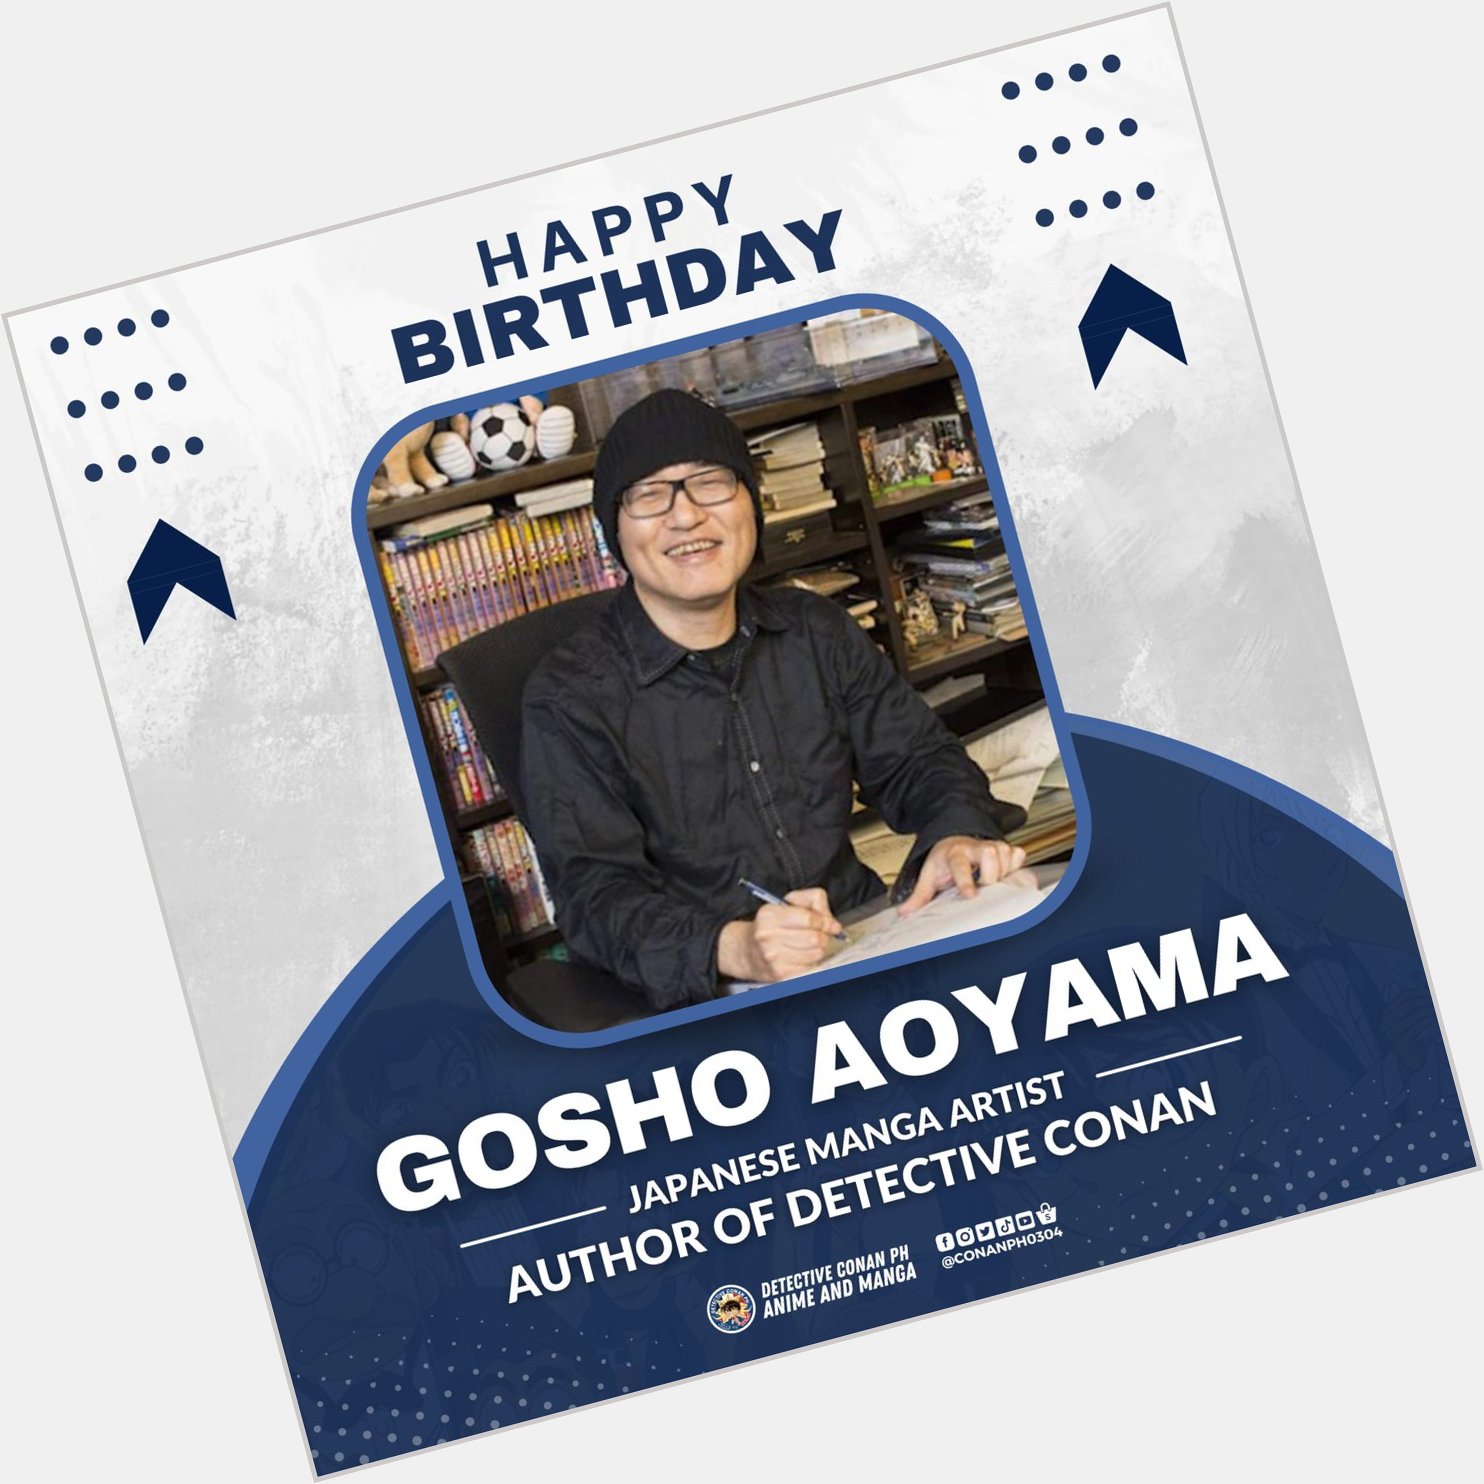 Happy 60th Birthday, Gosho Aoyama!   